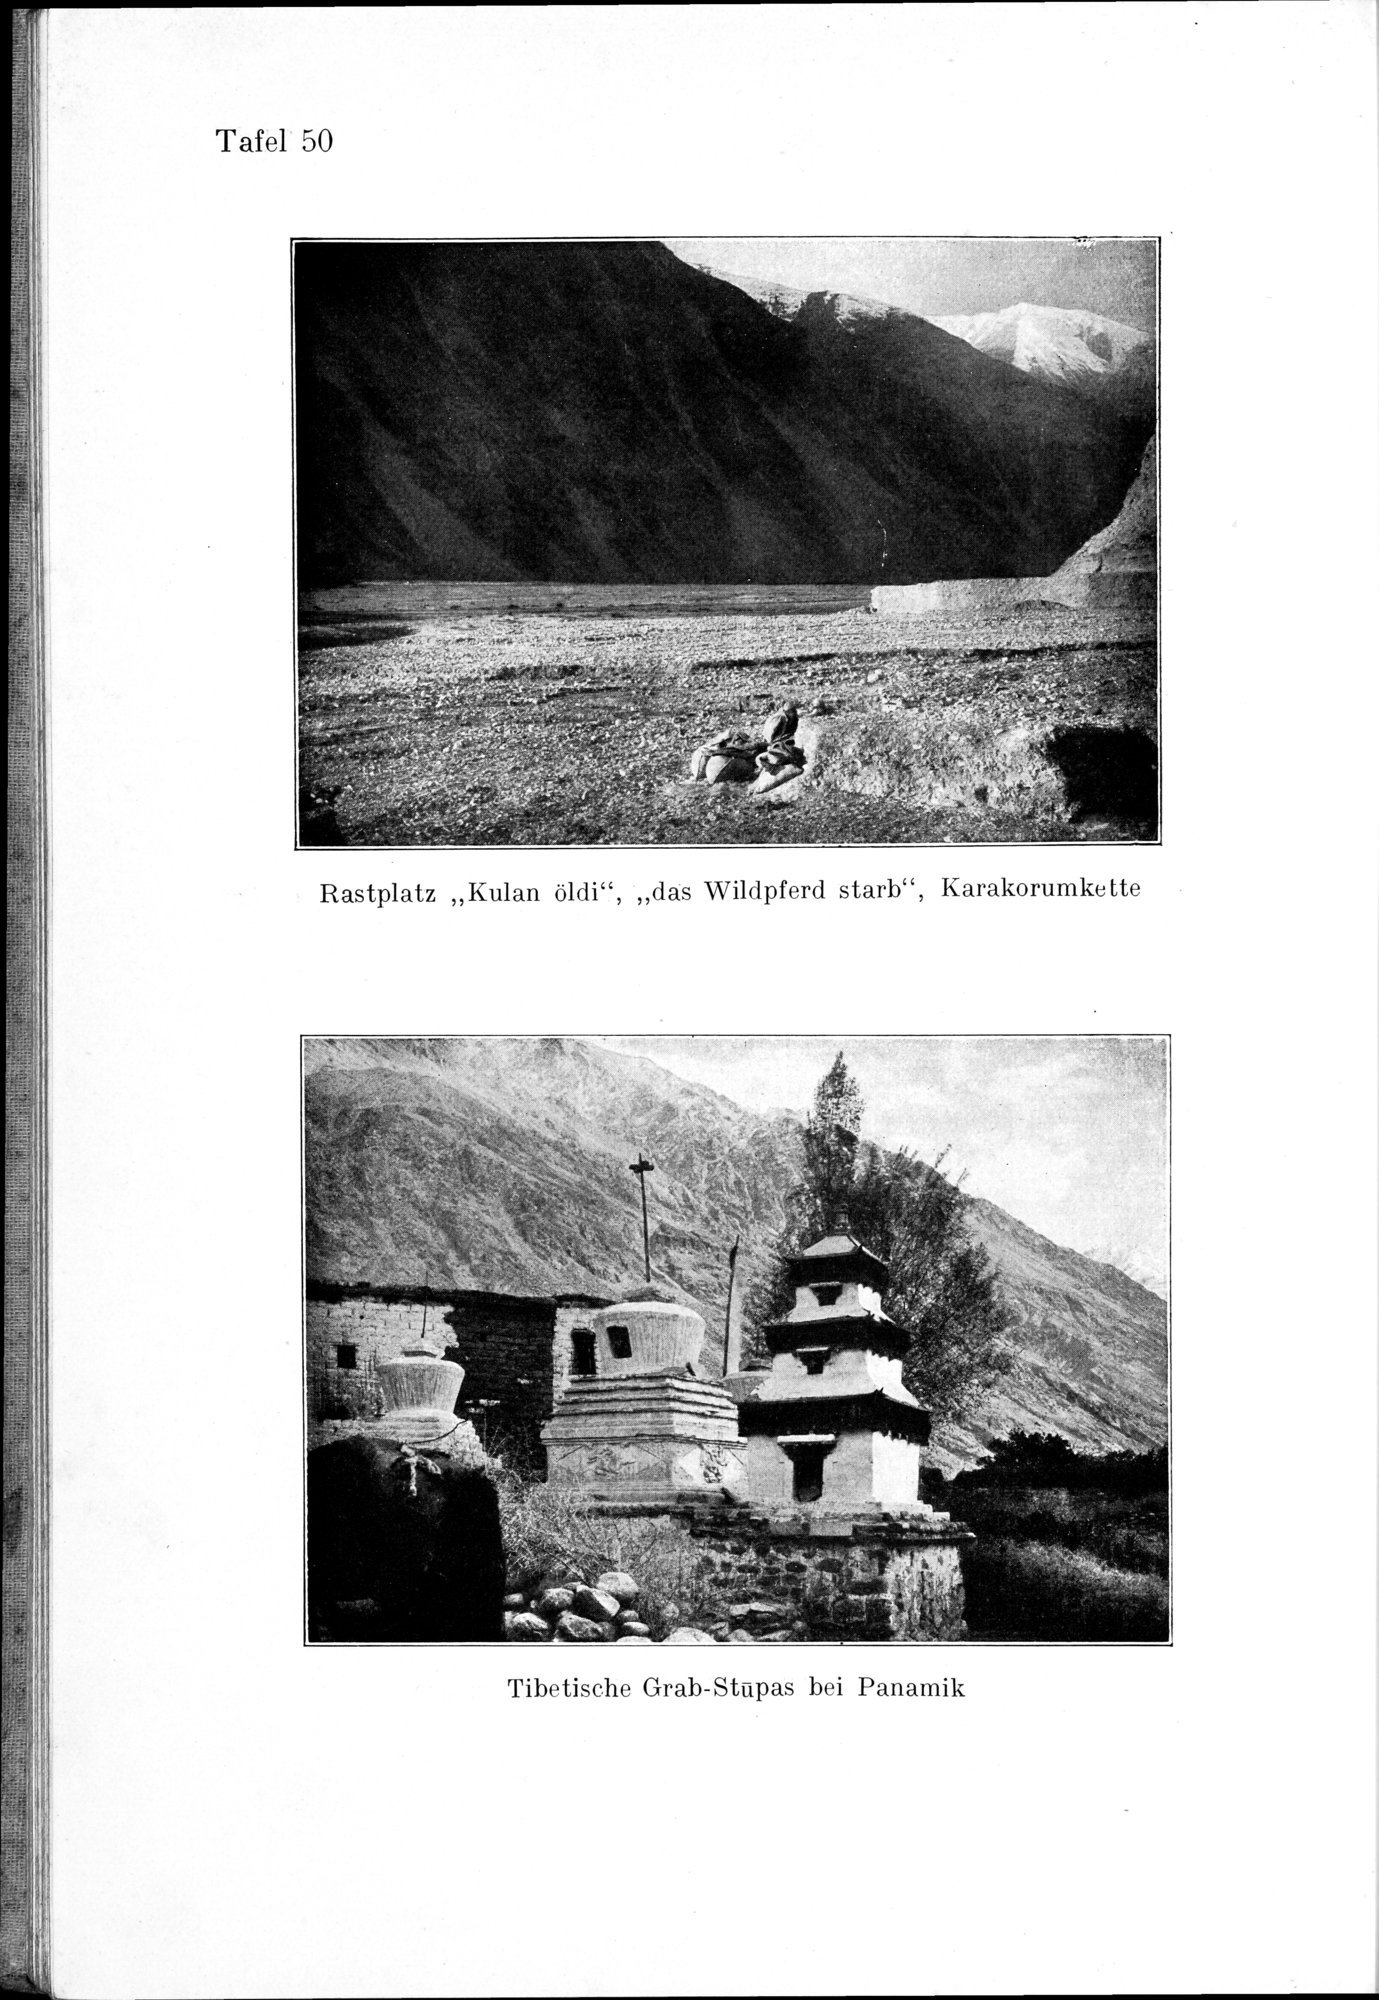 Auf Hellas Spuren in Ostturkistan : vol.1 / Page 218 (Grayscale High Resolution Image)